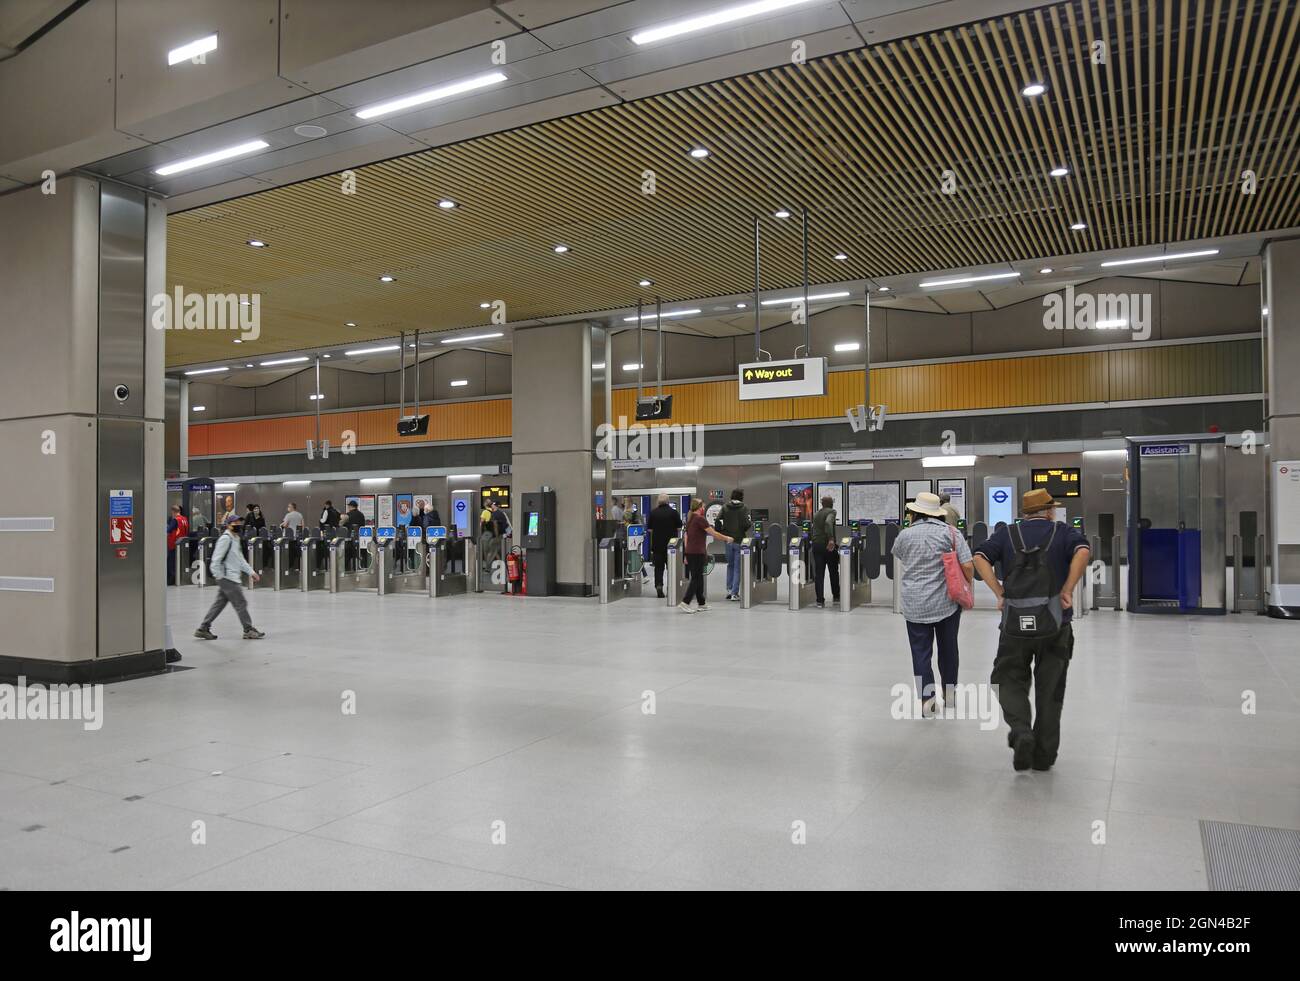 Biglietteria presso la nuova stazione della metropolitana di Londra presso la centrale elettrica di Battersea, Londra, Regno Unito. Aperto a settembre 2021. Parte della nuova estensione Northern Line. Foto Stock